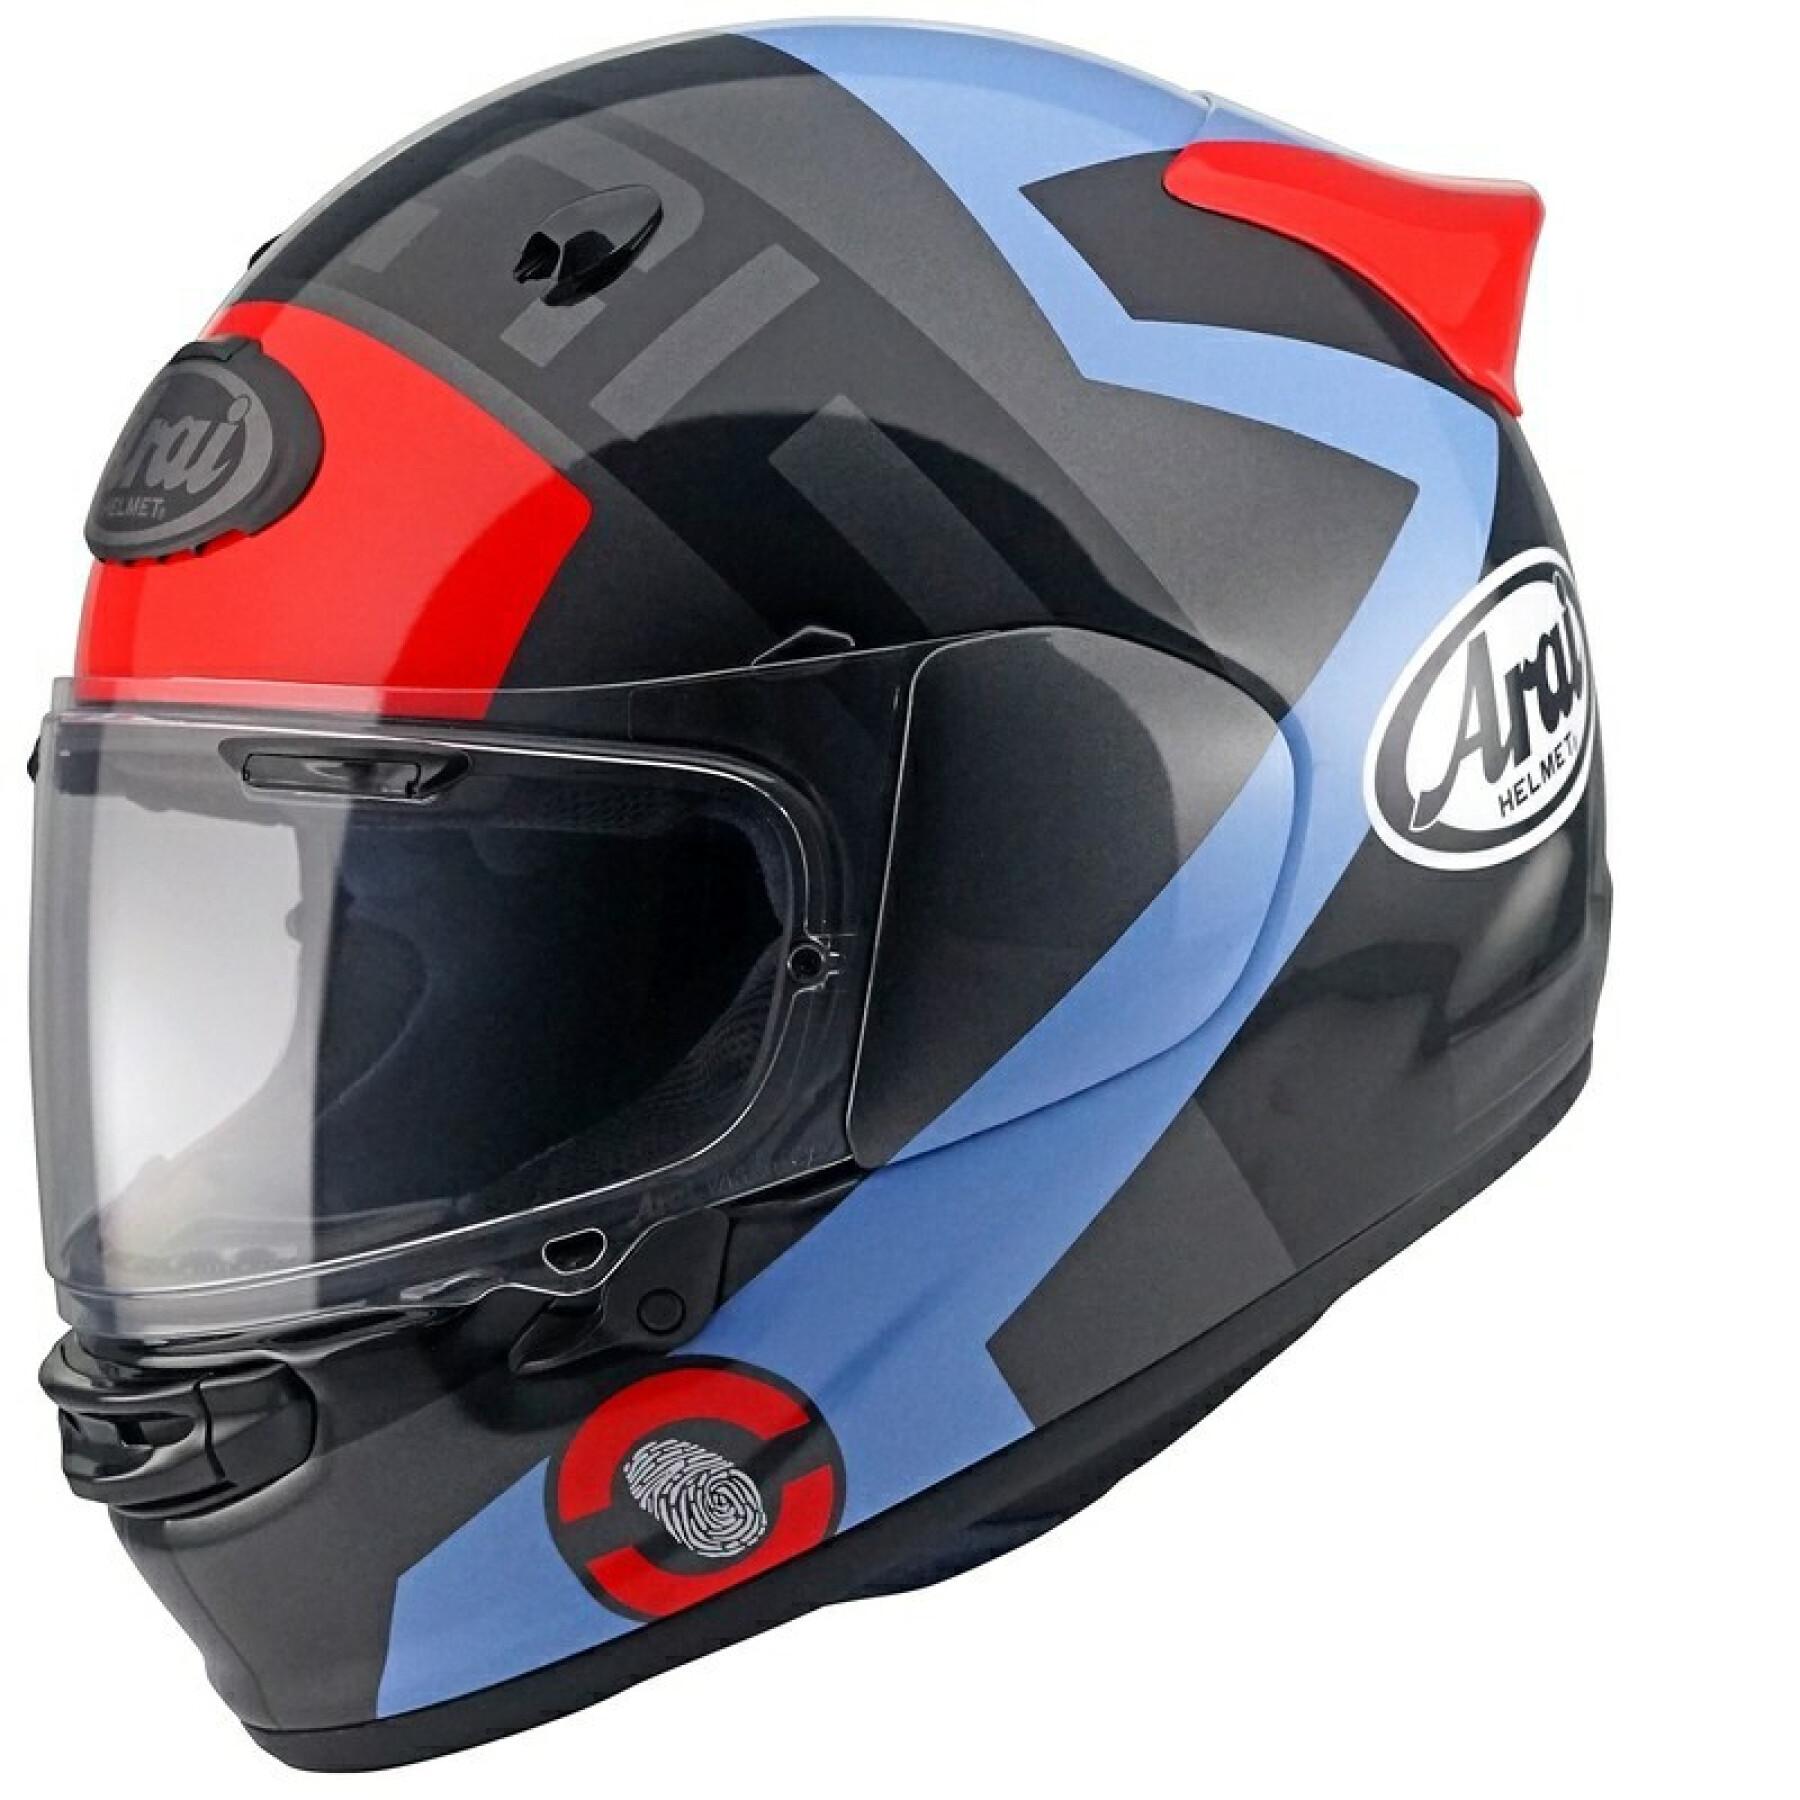 Full face motorcycle helmet Arai Quantic Space